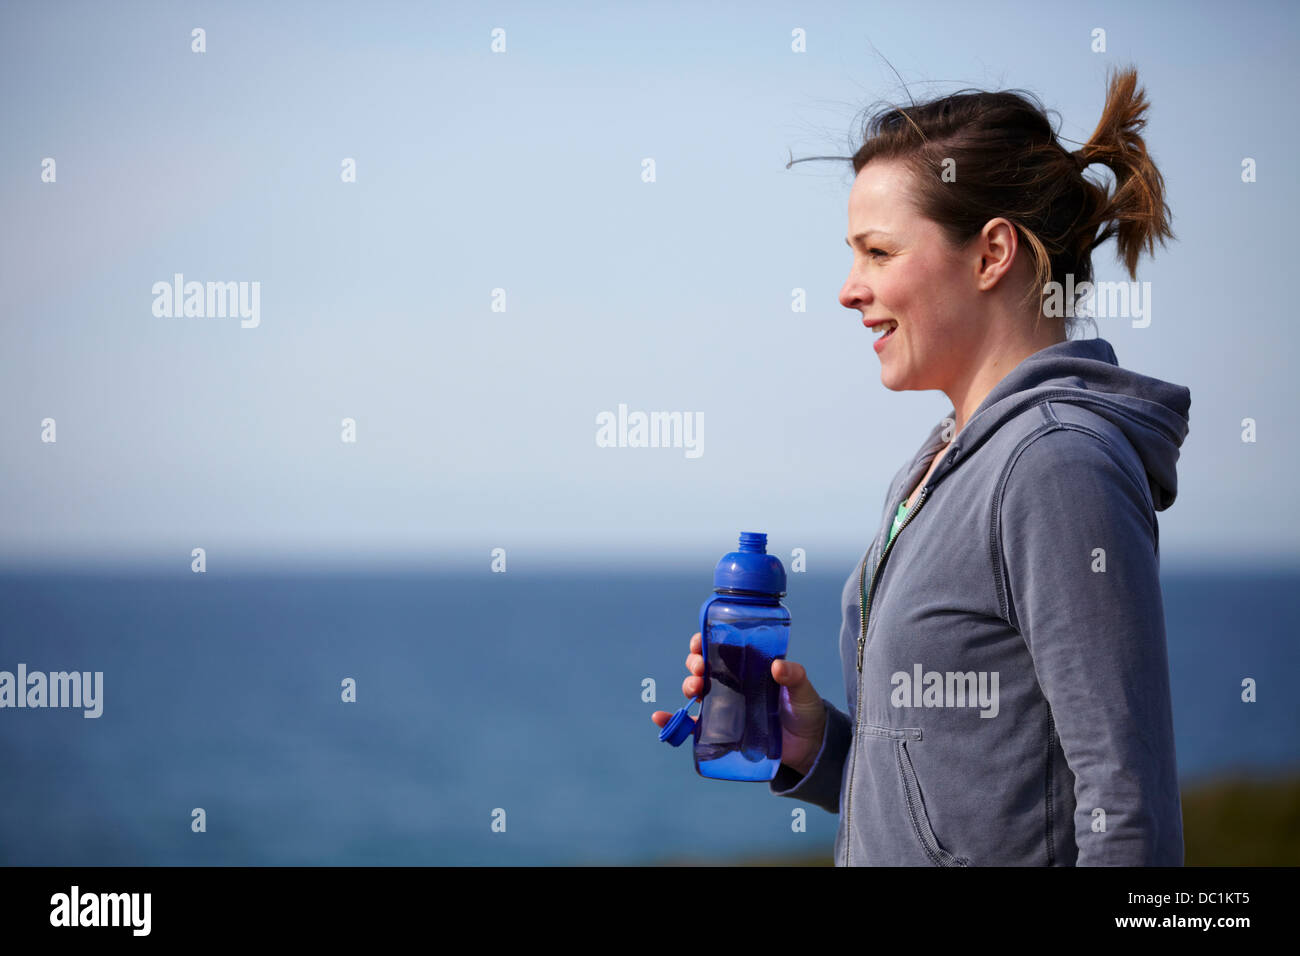 Mujer joven en la costa teniendo ejercicio romper Foto de stock